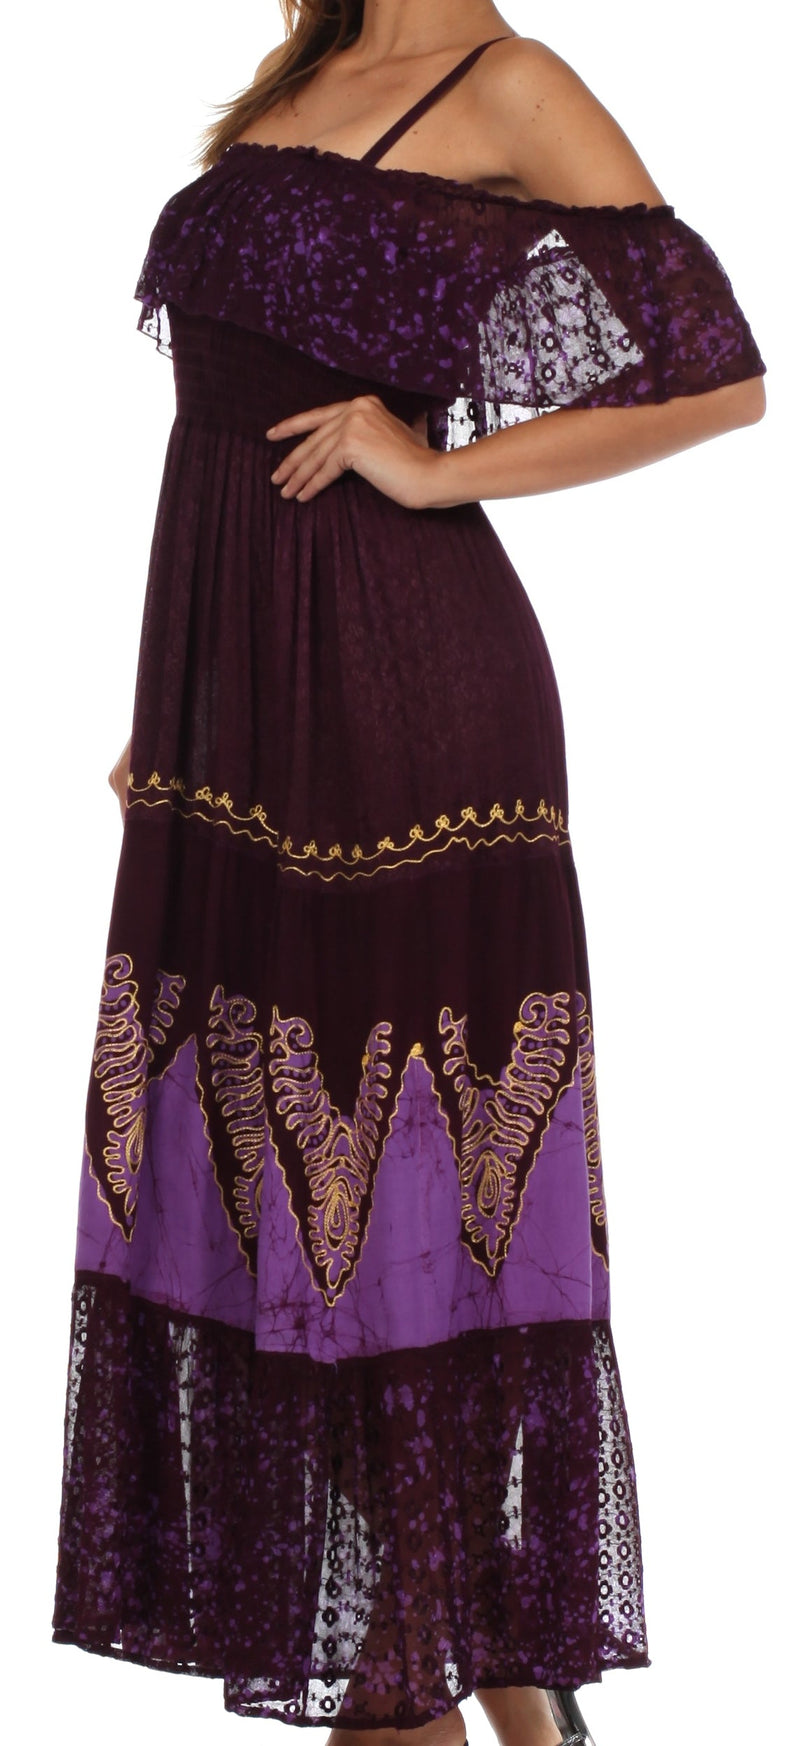 Sakkas Tiva Batik Embroidered Jacquard Off Shoulder Peasant Dress